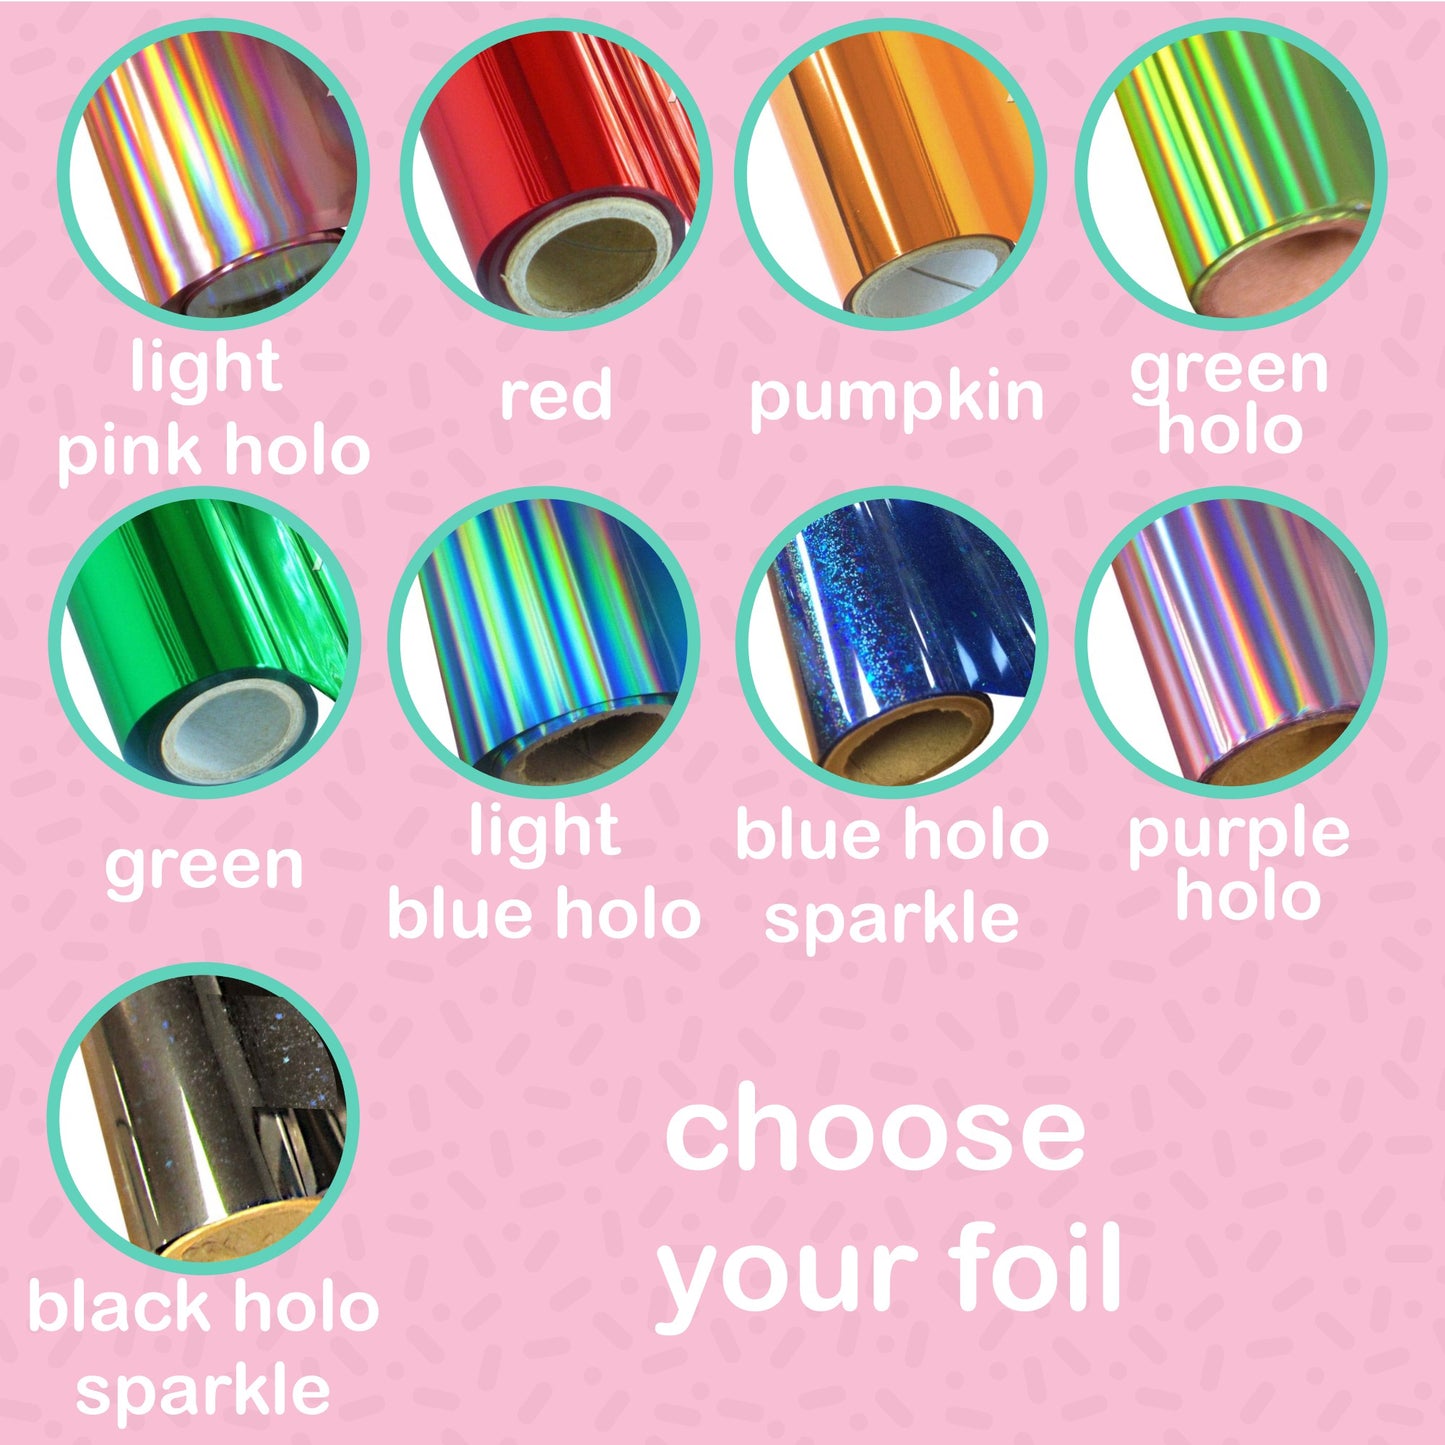 Ocean Waves Foil Stickers - choose your foil - F174